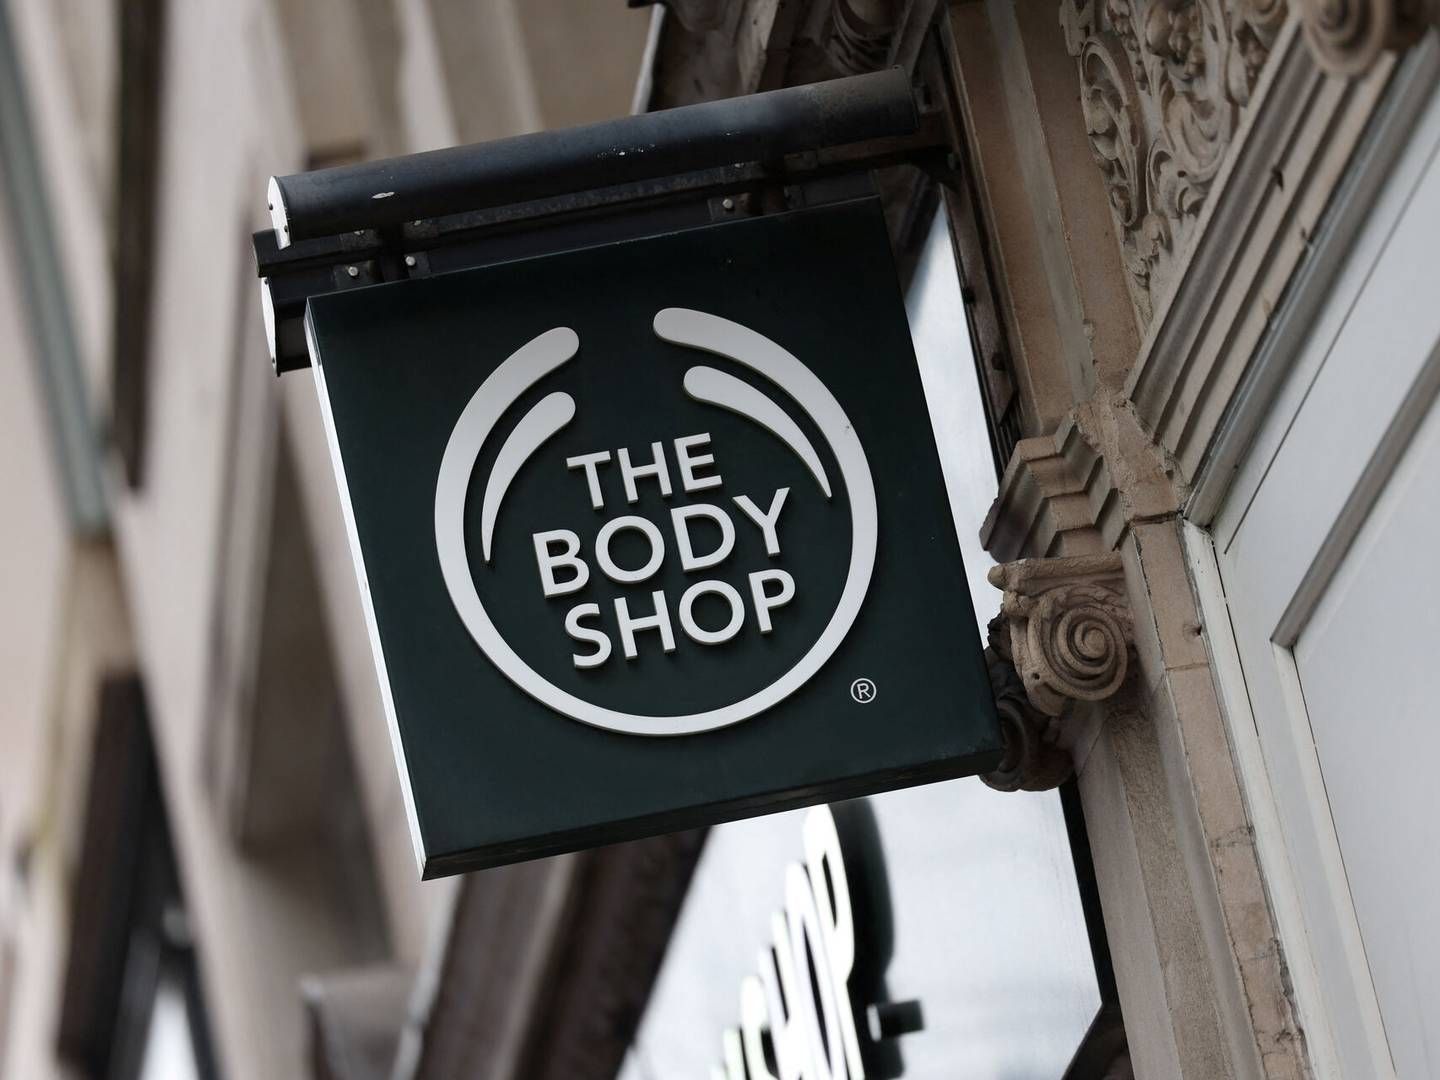 I hjemlandet Storbritannien har administratorerne nu besluttet at lukke 75 butikker i forsøget på at holde The Body Shop oven vande. | Foto: Isabel Infantes/Reuters/Ritzau Scanpix